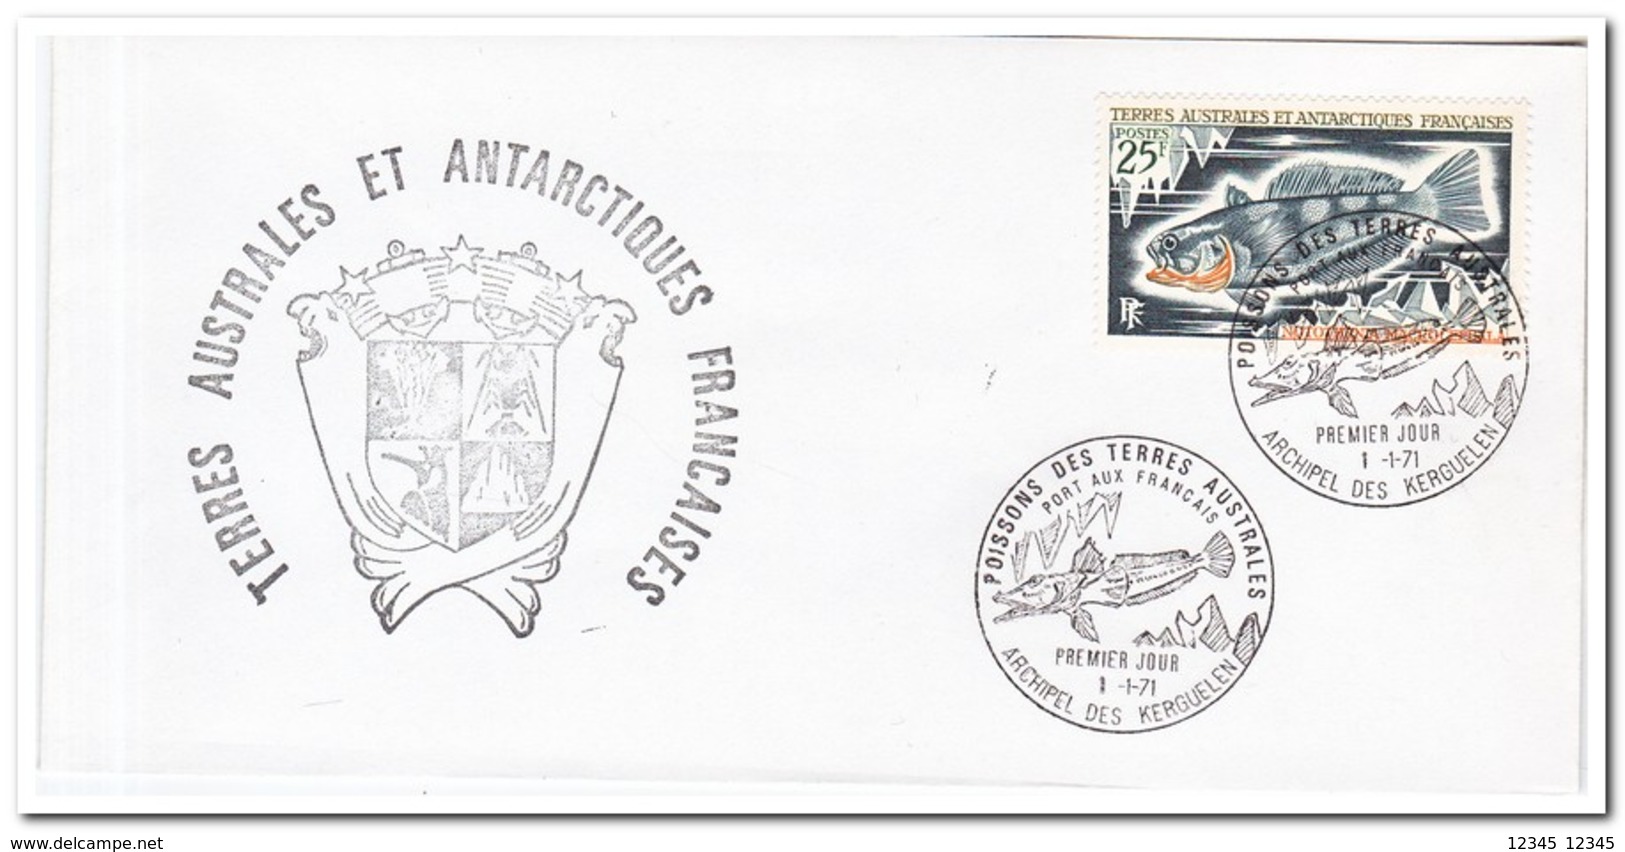 Frans Antarctica 1971, FDC, Fish - FDC